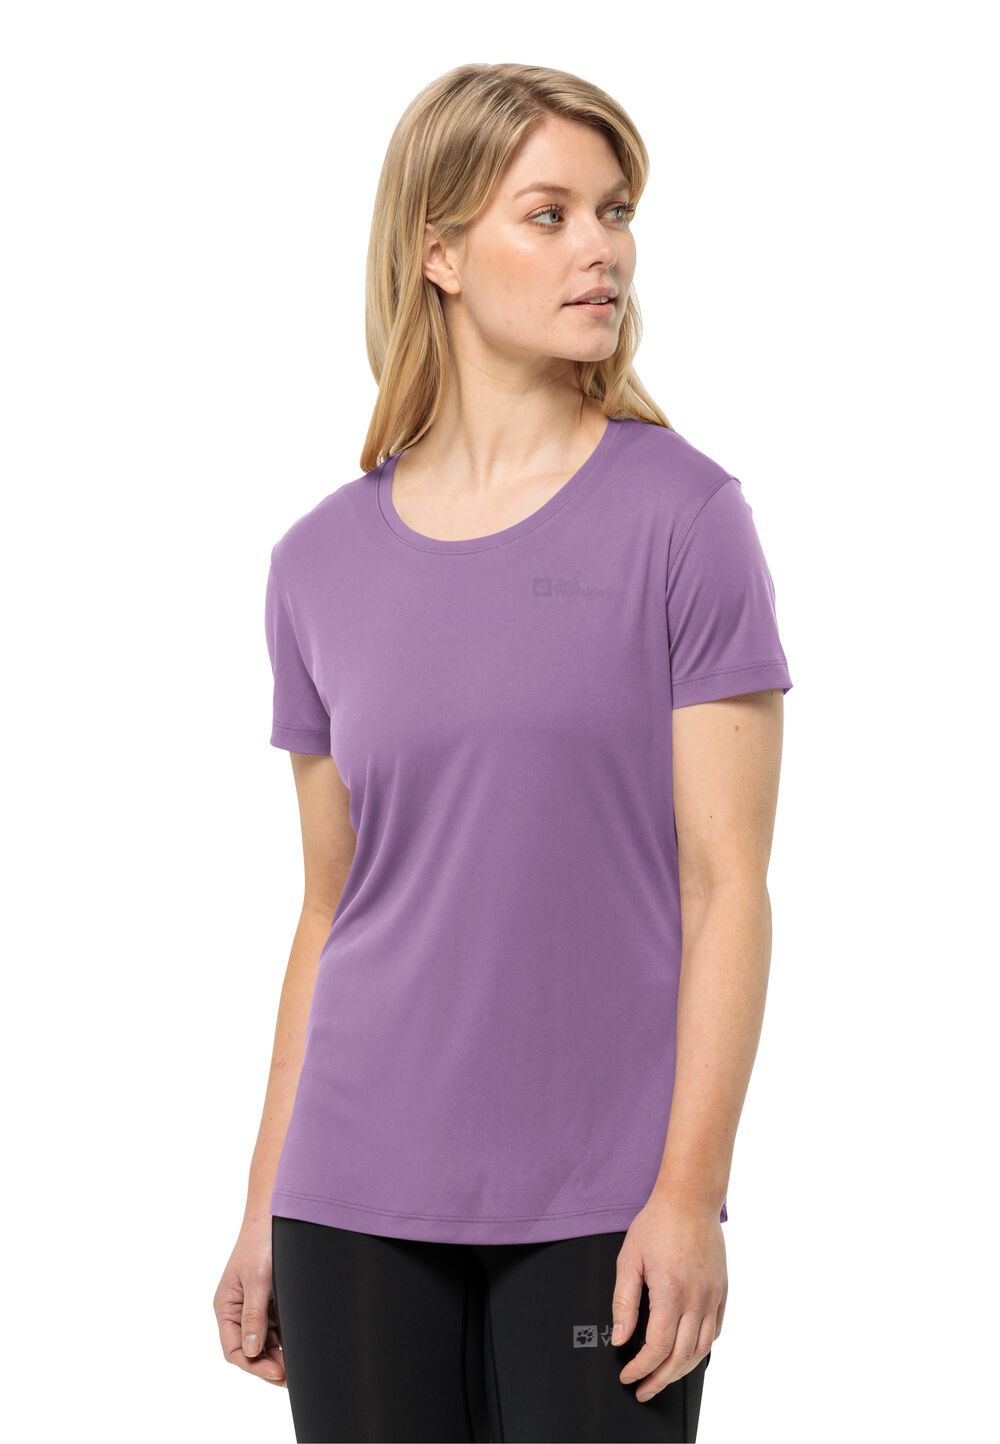 Jack Wolfskin Tech T-Shirt Women Functioneel shirt Dames XS velvet